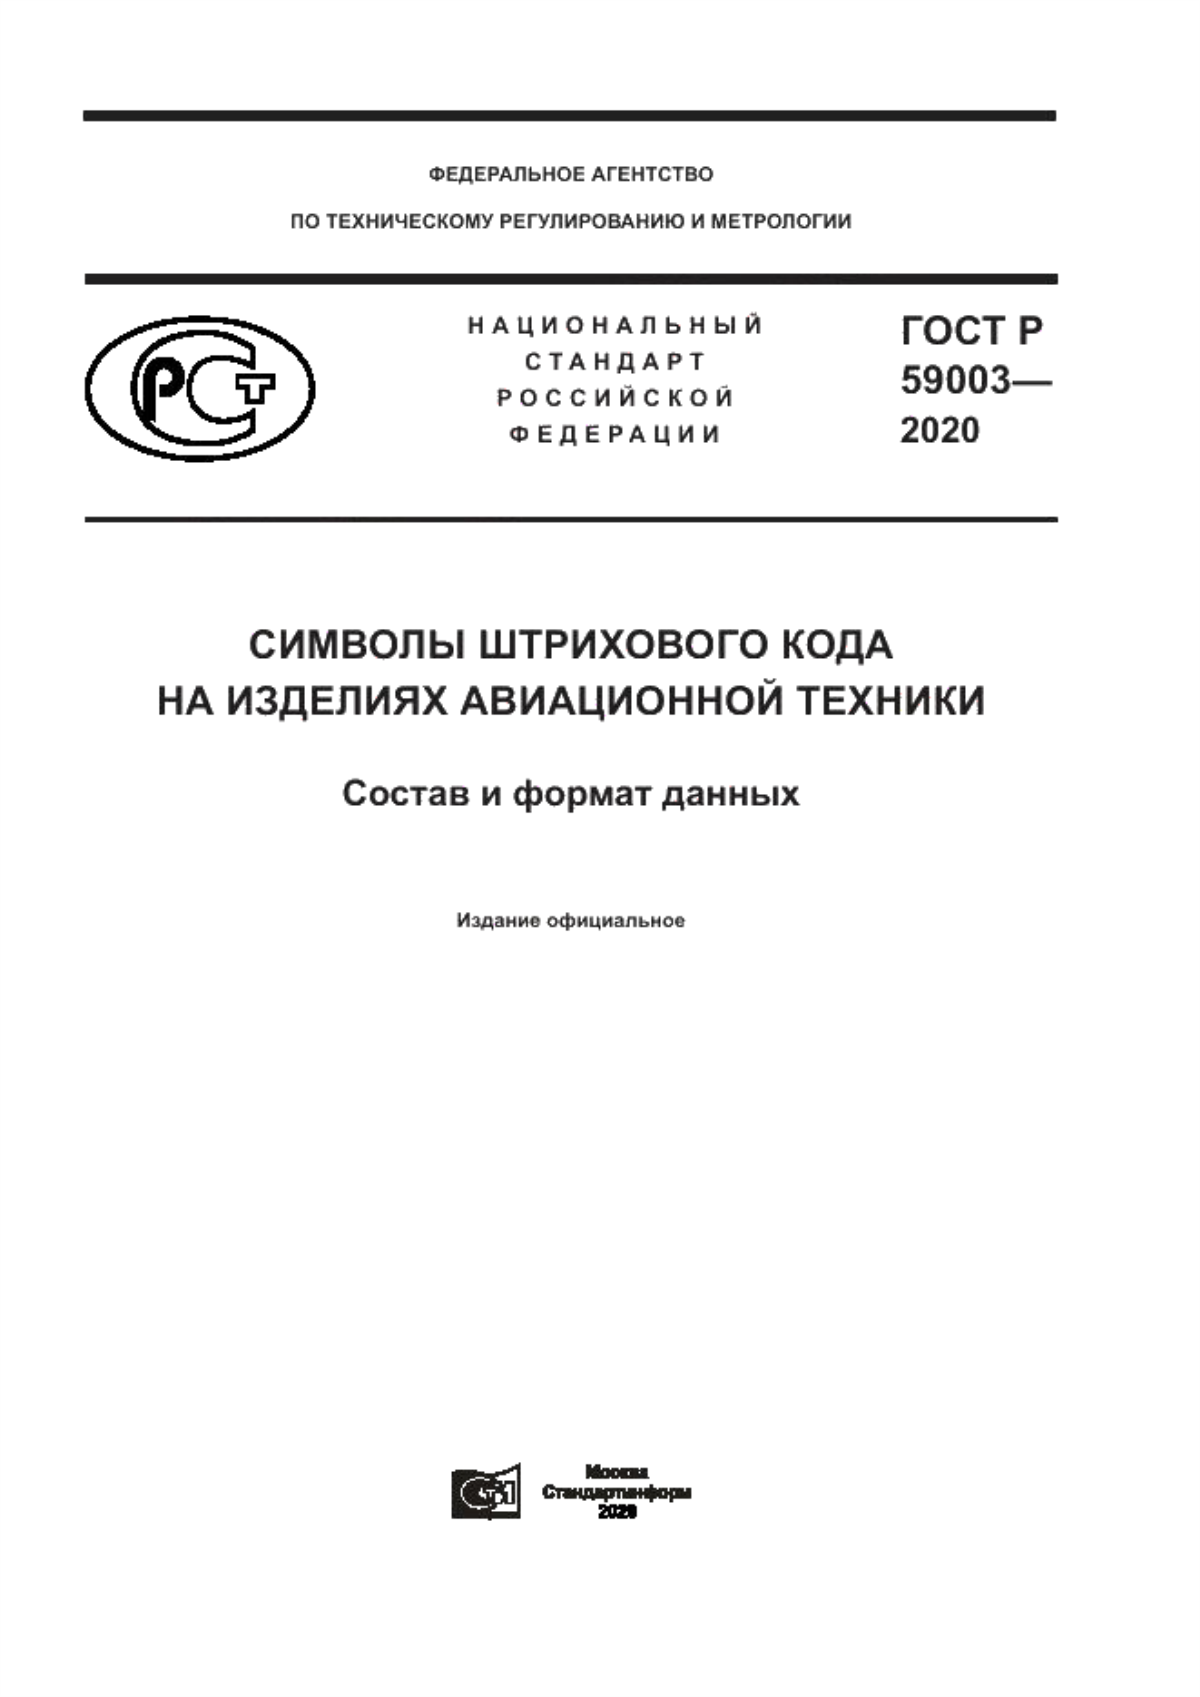 ГОСТ Р 59003-2020 Символы штрихового кода на изделиях авиационной техники. Состав и формат данных